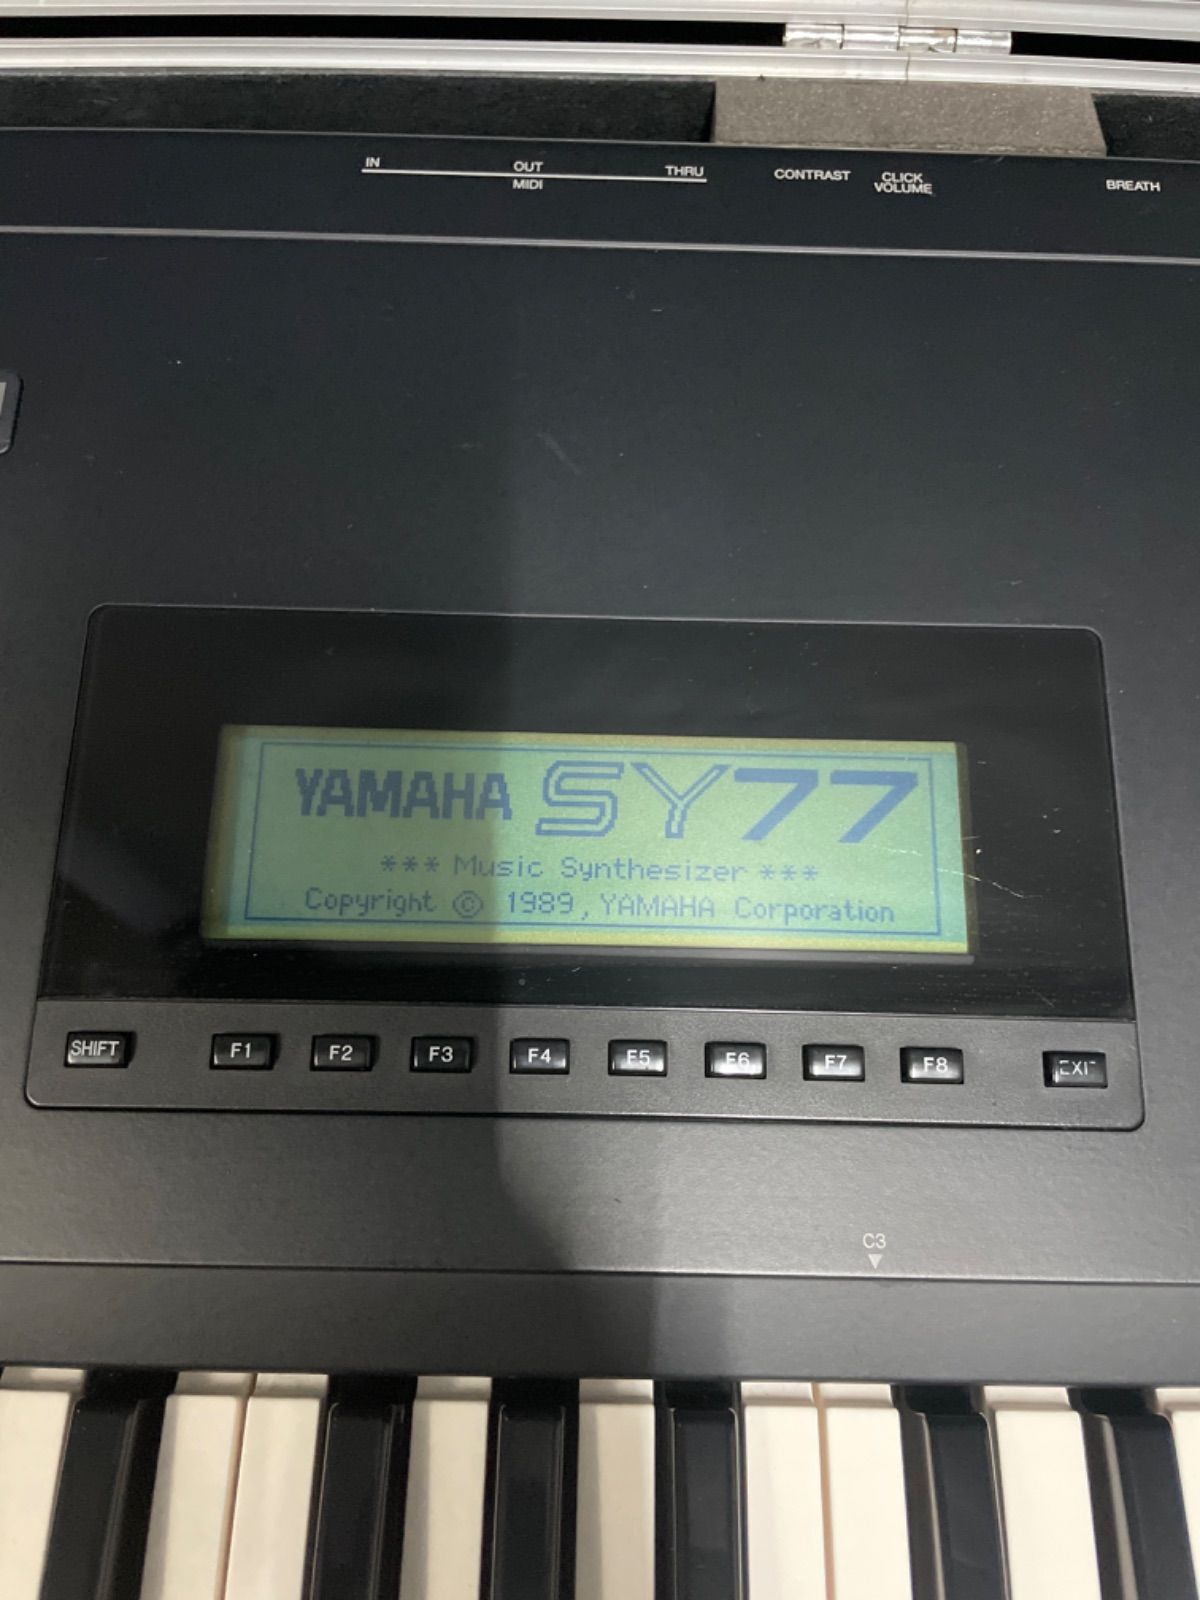 YAMAHA シンセサイザー SY77 ハードケース付き - ショウナンショップ